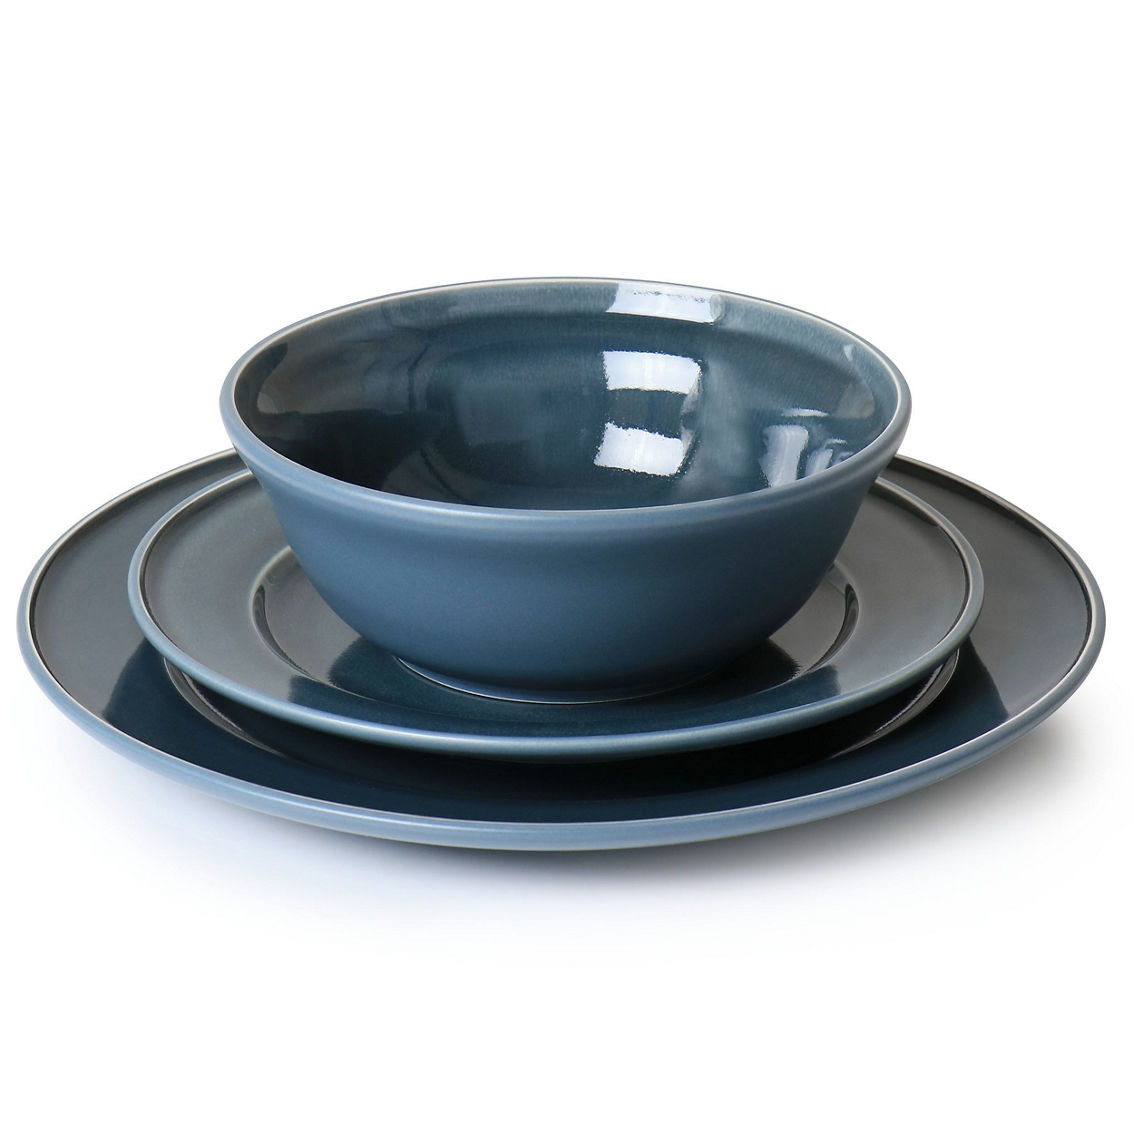 Martha Stewart 12 Piece Speckle Glaze Stoneware Dinnerware Set in Blue - Image 3 of 5